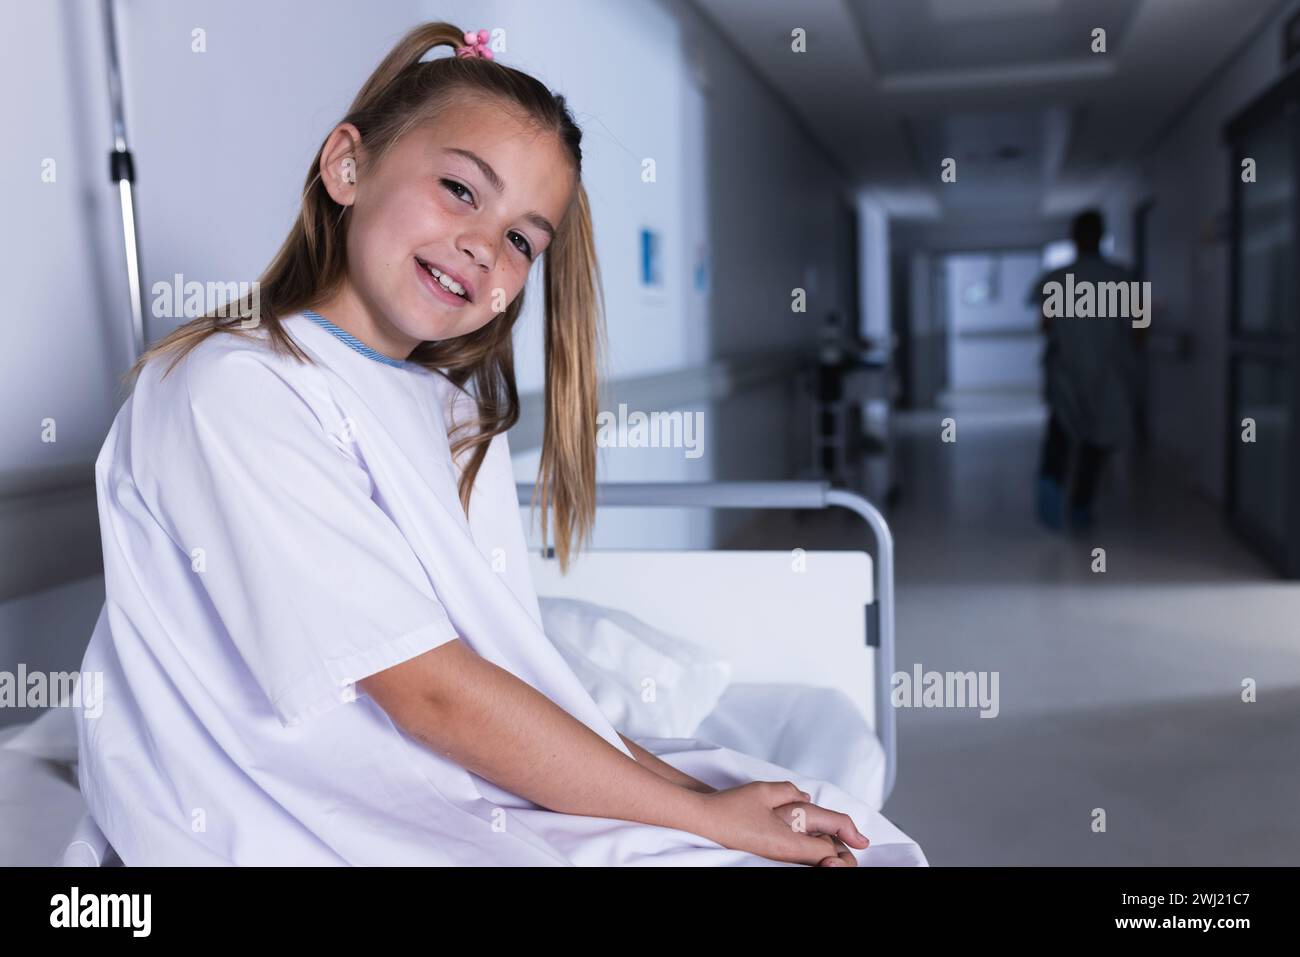 Felice ragazza caucasica seduta sul letto in corridoio dell'ospedale con spazio per la copia Foto Stock